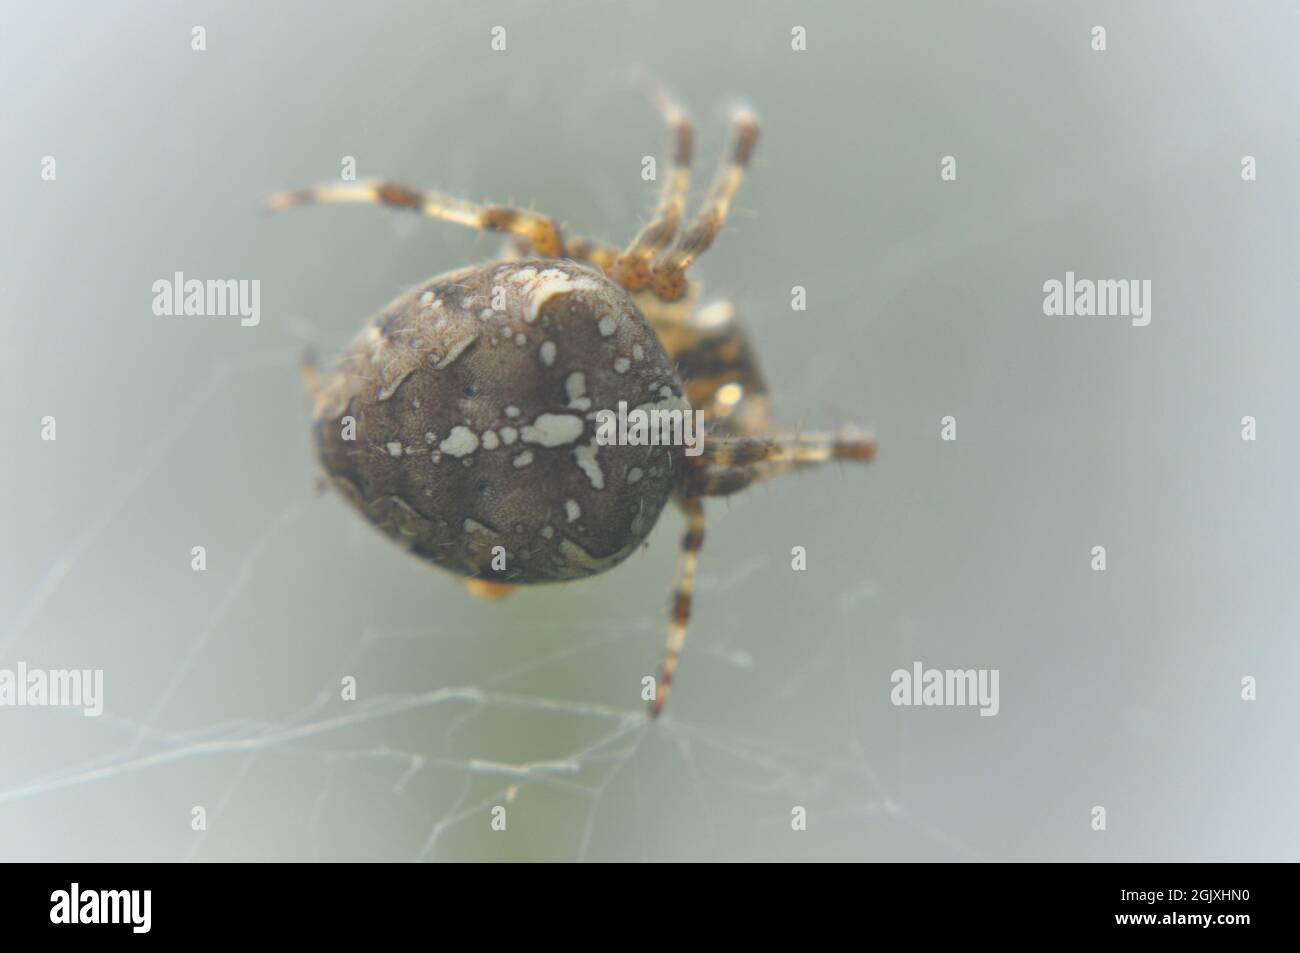 Gartenspinne - Araneus diadematus in seinem Netz. Die Markierungen auf seinem Körper sind deutlich zu sehen Stockfoto